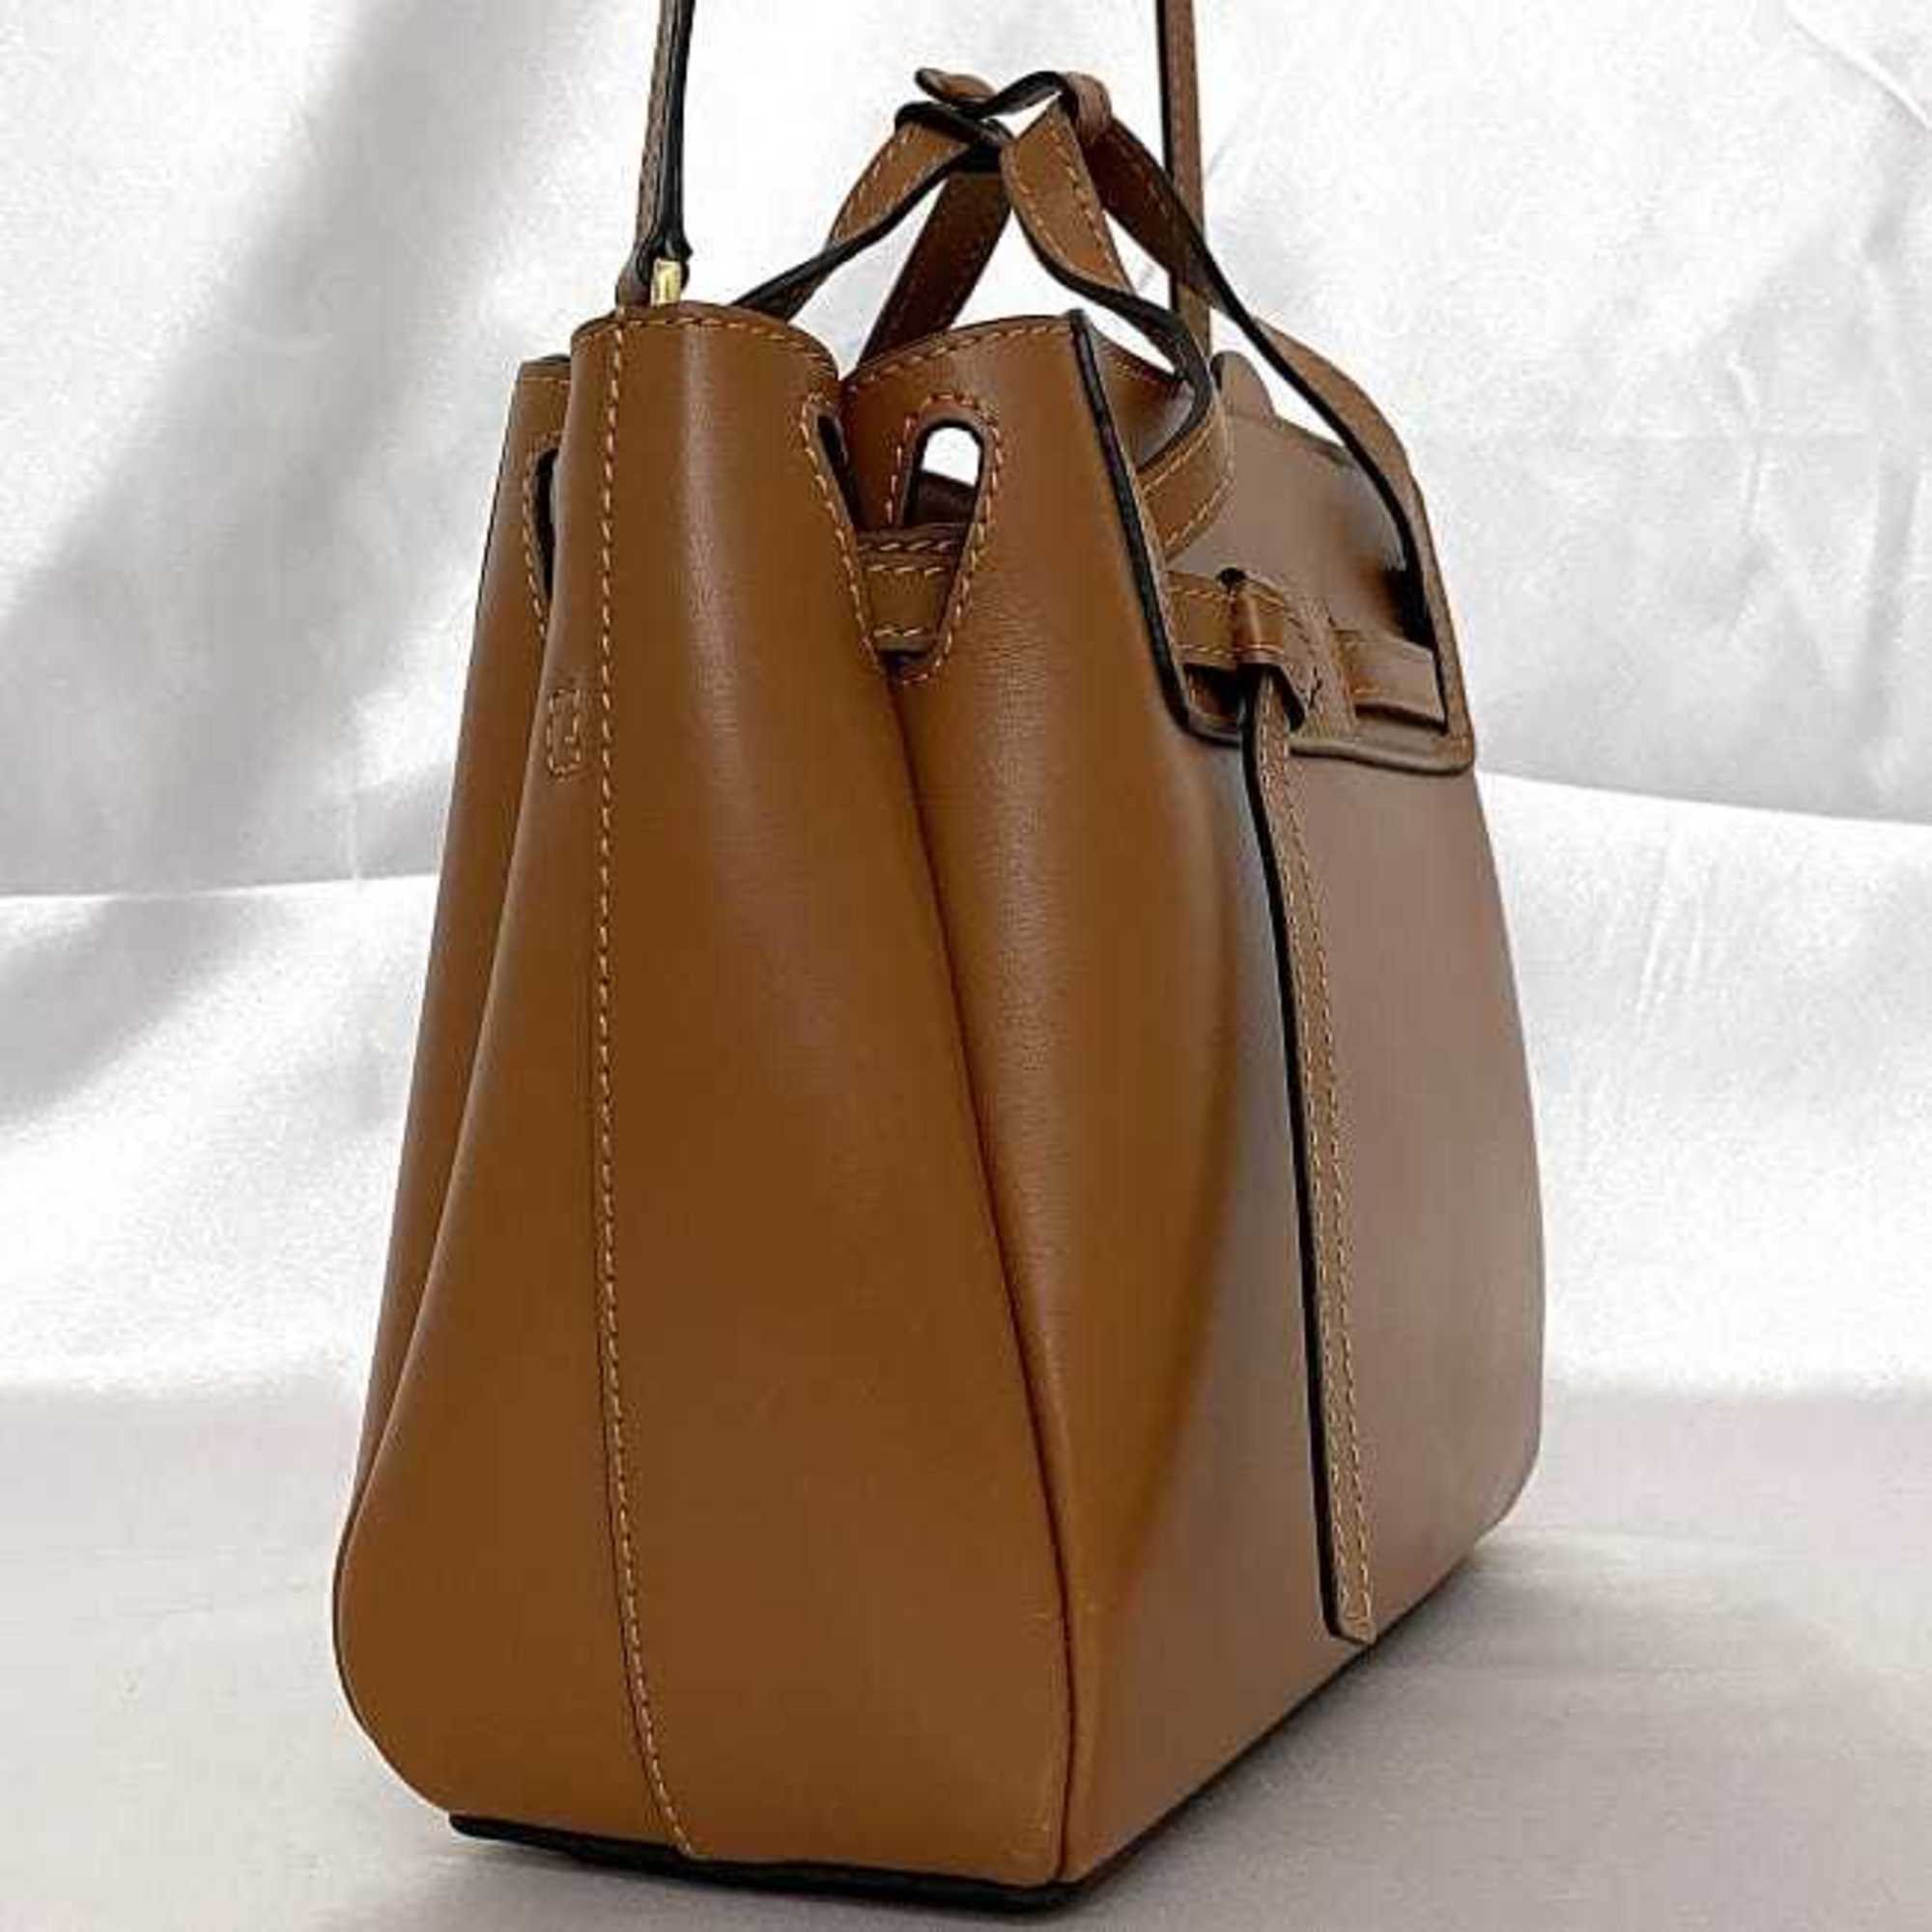 LOEWE LAZO 2-way bag brown 329.74.Z71 f-20527 shoulder leather calf ladies